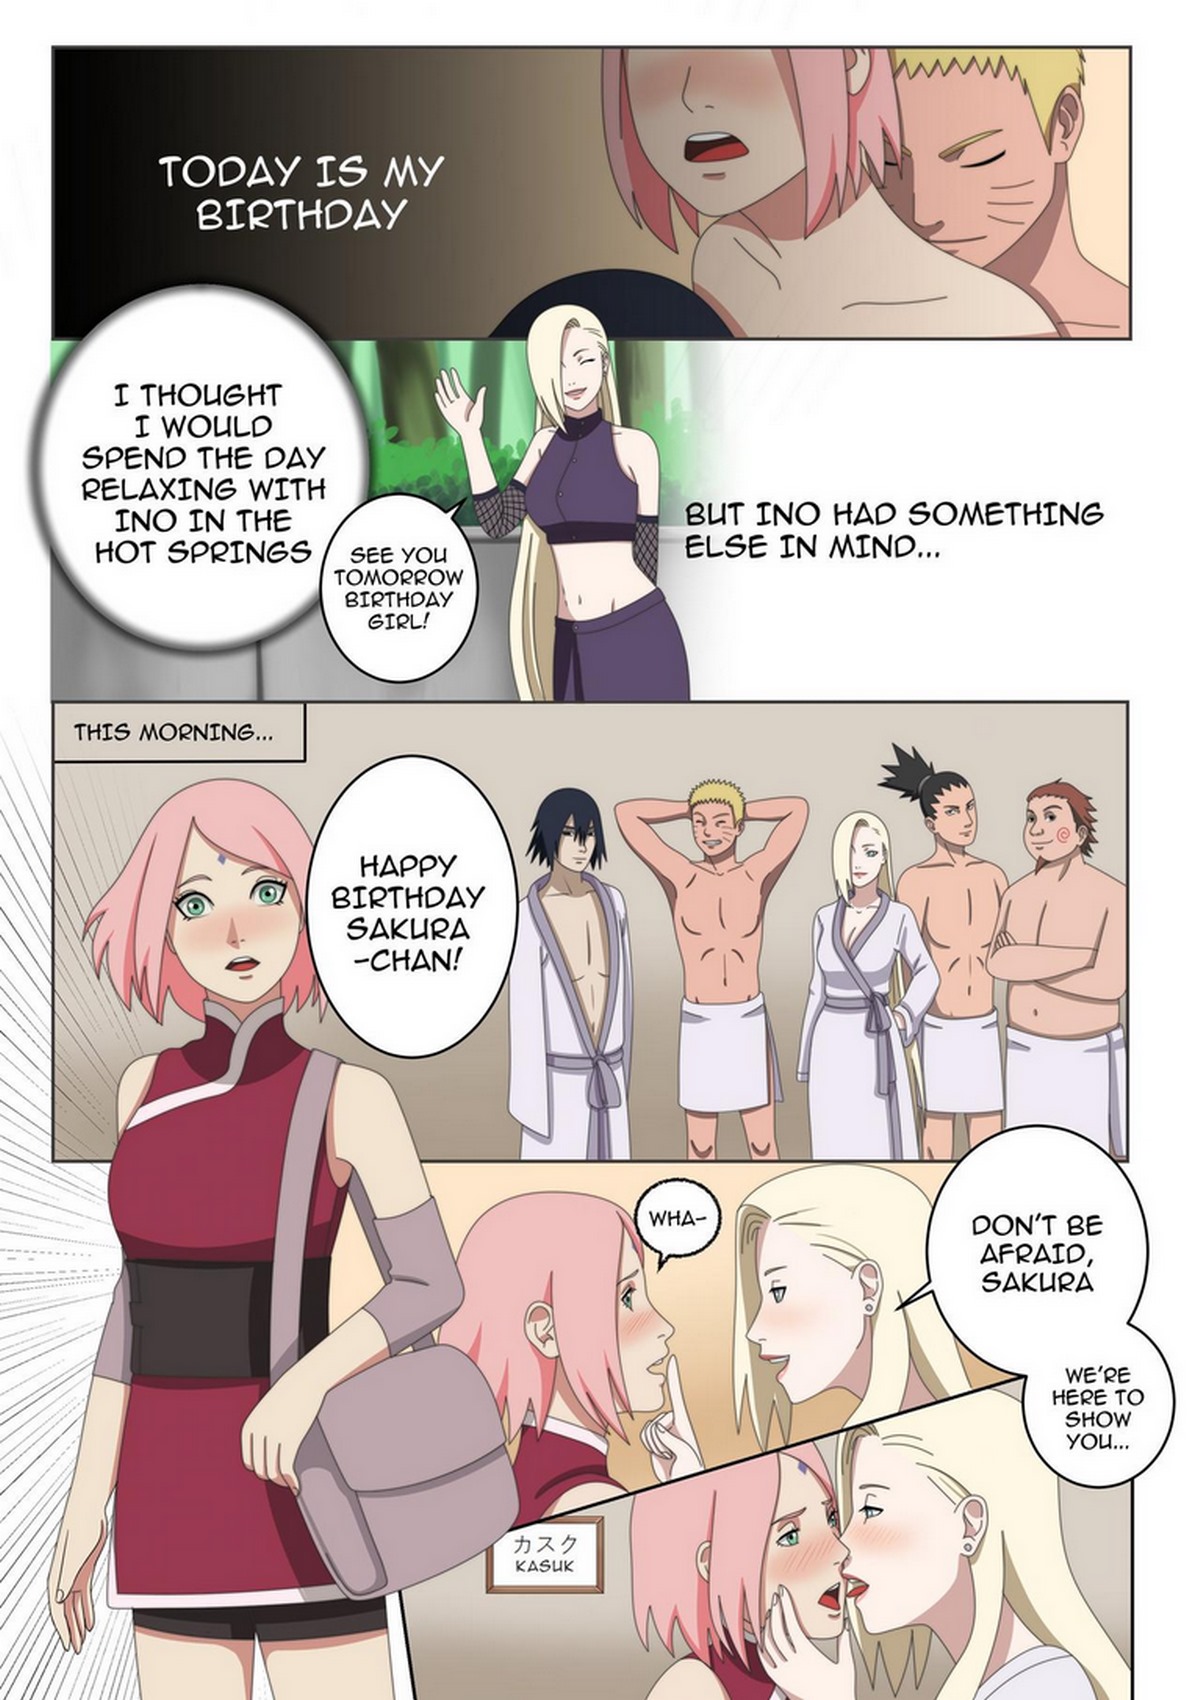 Sakura haruno porn comics